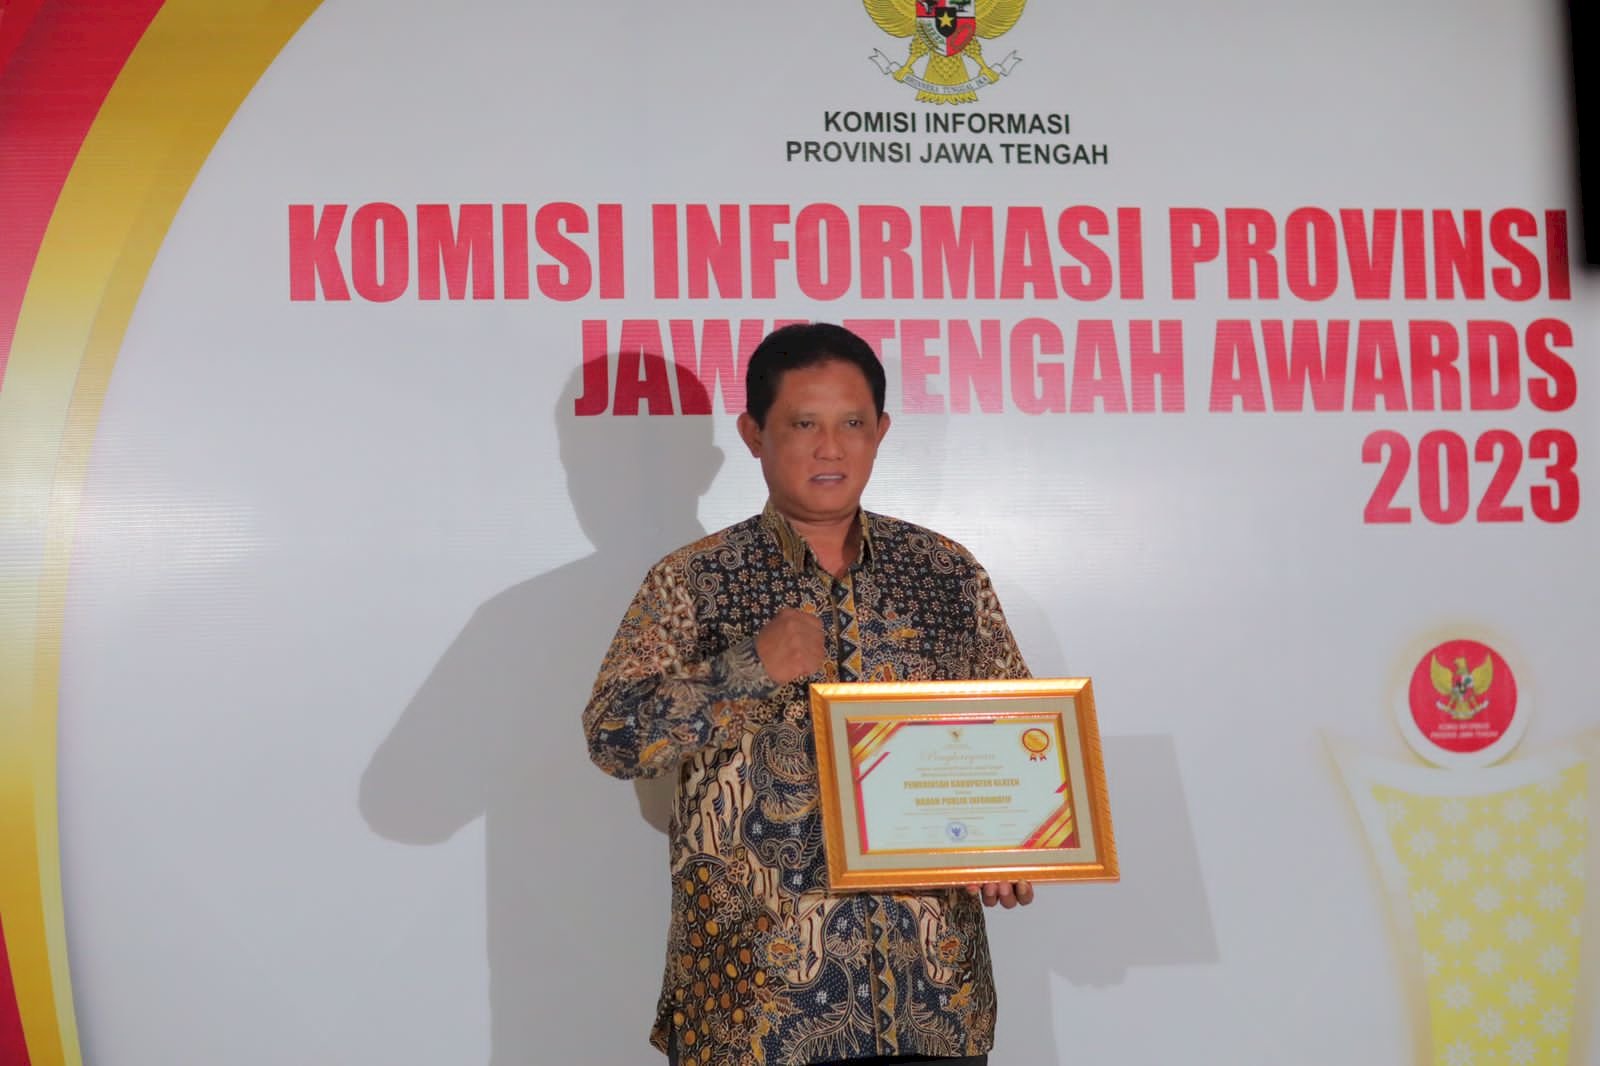 Pemkab Klaten Raih Predikat Informatif dalam Penghargaan KIP Jawa Tengah 2023